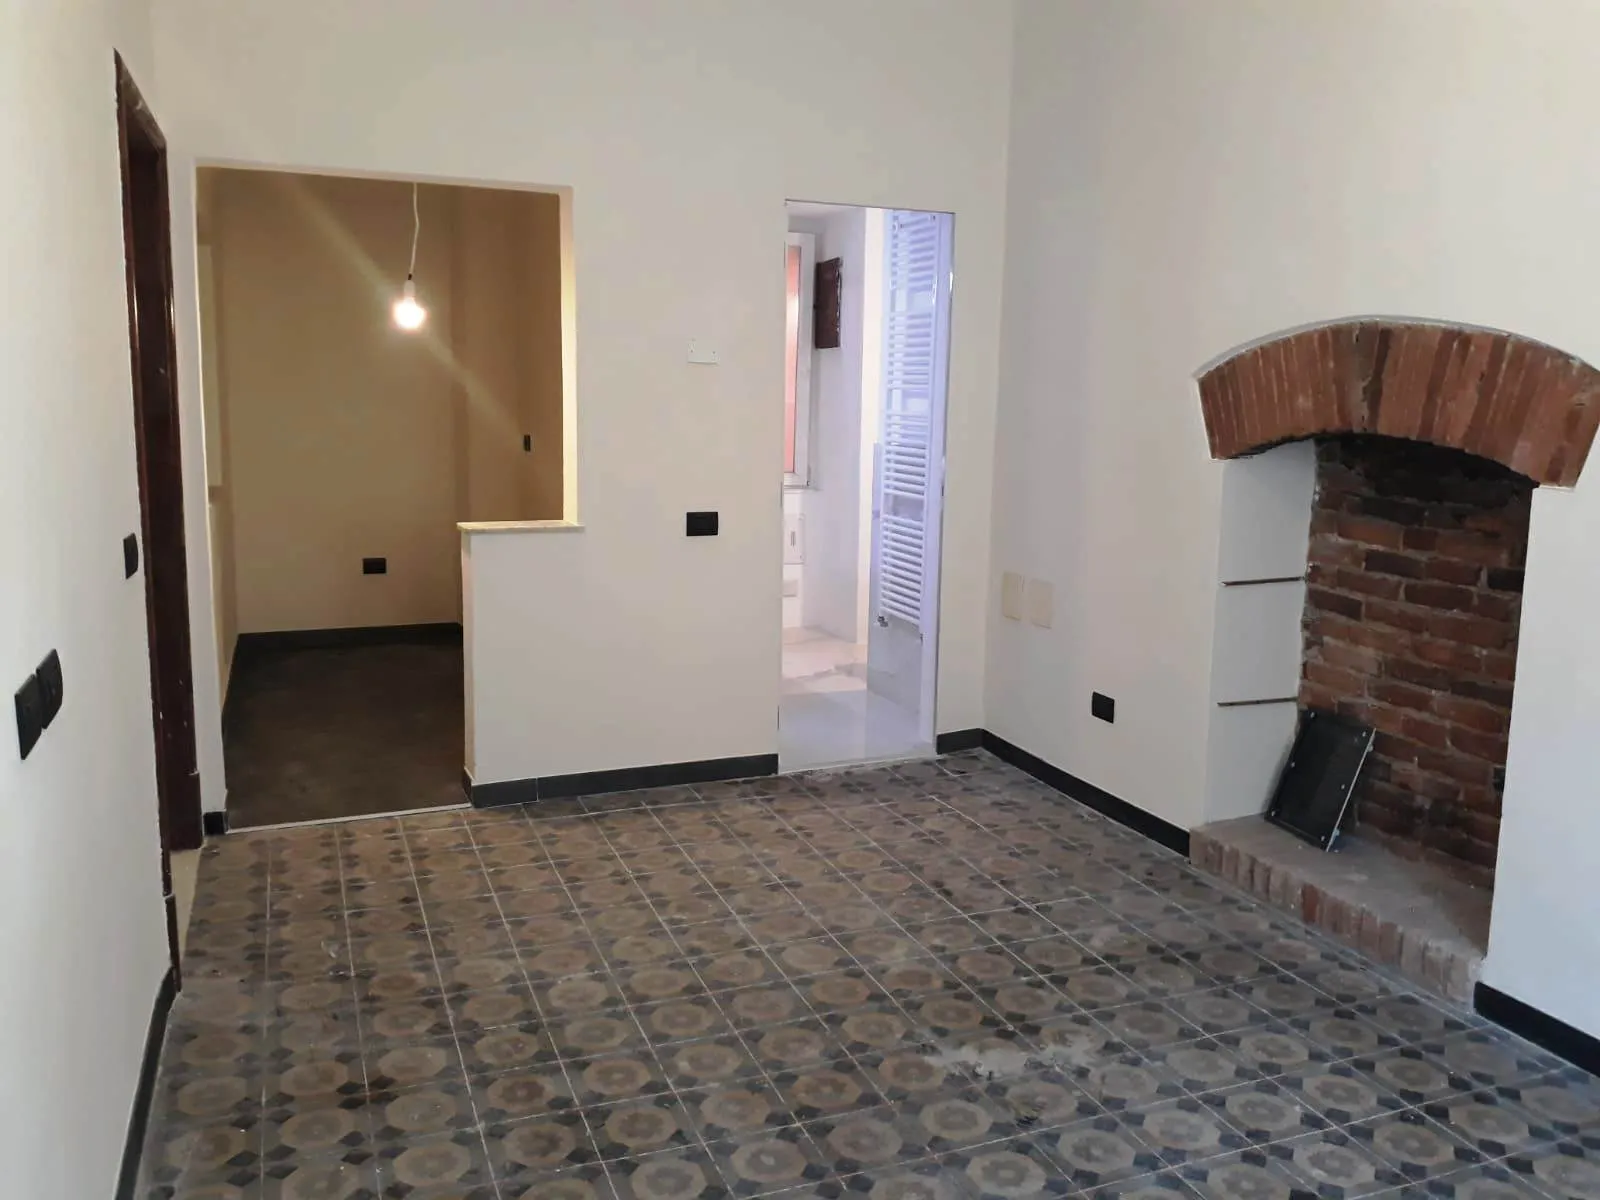 Immagine per Appartamento in vendita a Sarzana via Ippolito Landinelli 12